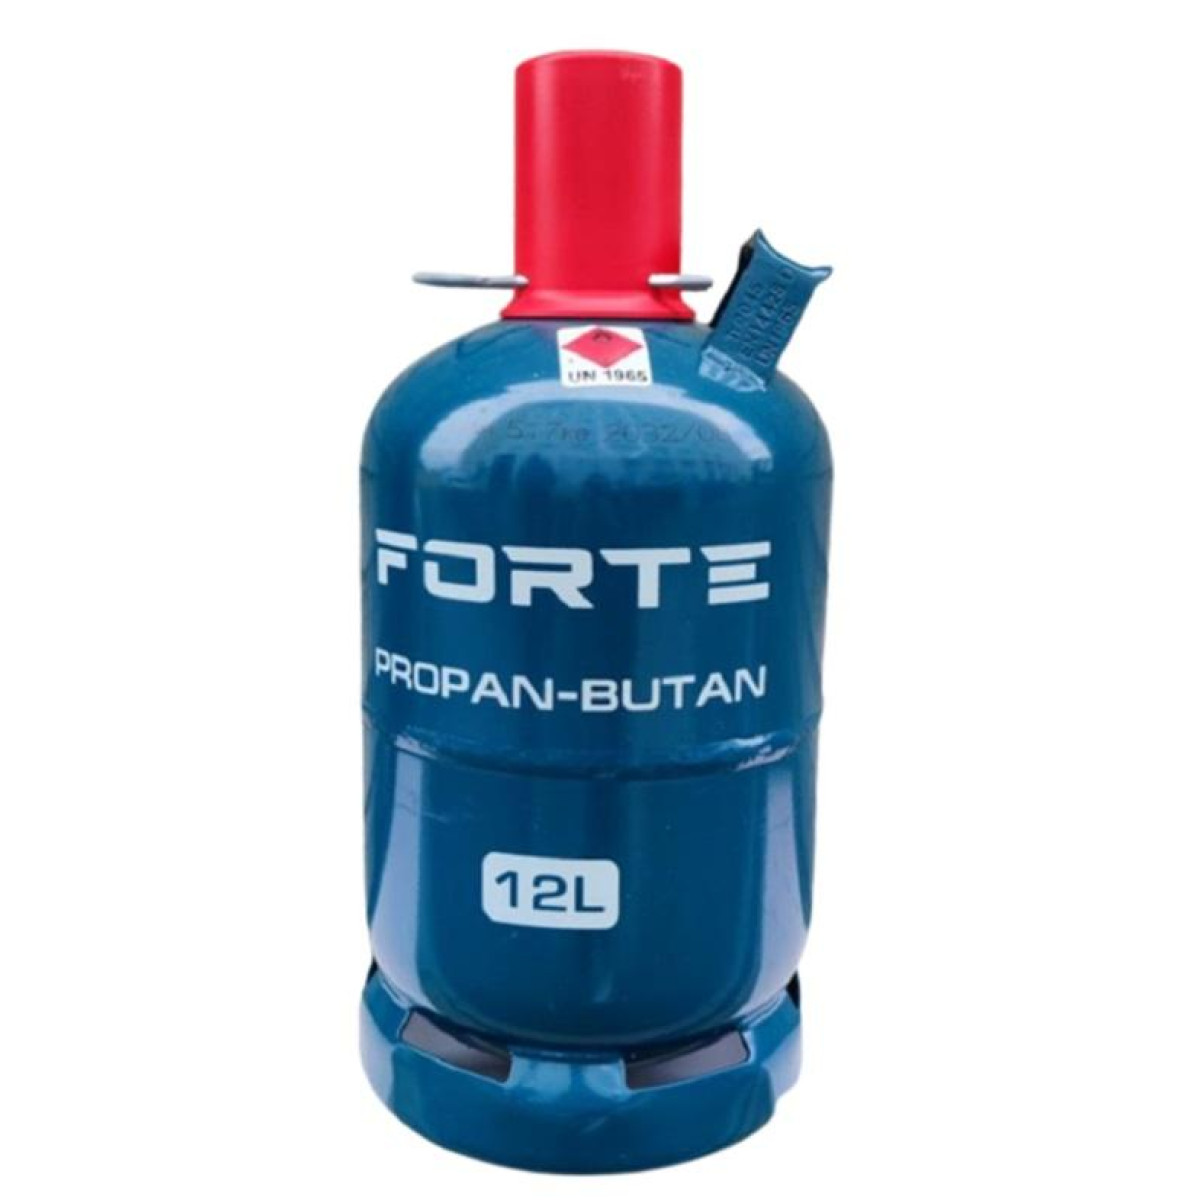 Балон газовый Forte 12 л. пропан-бутан